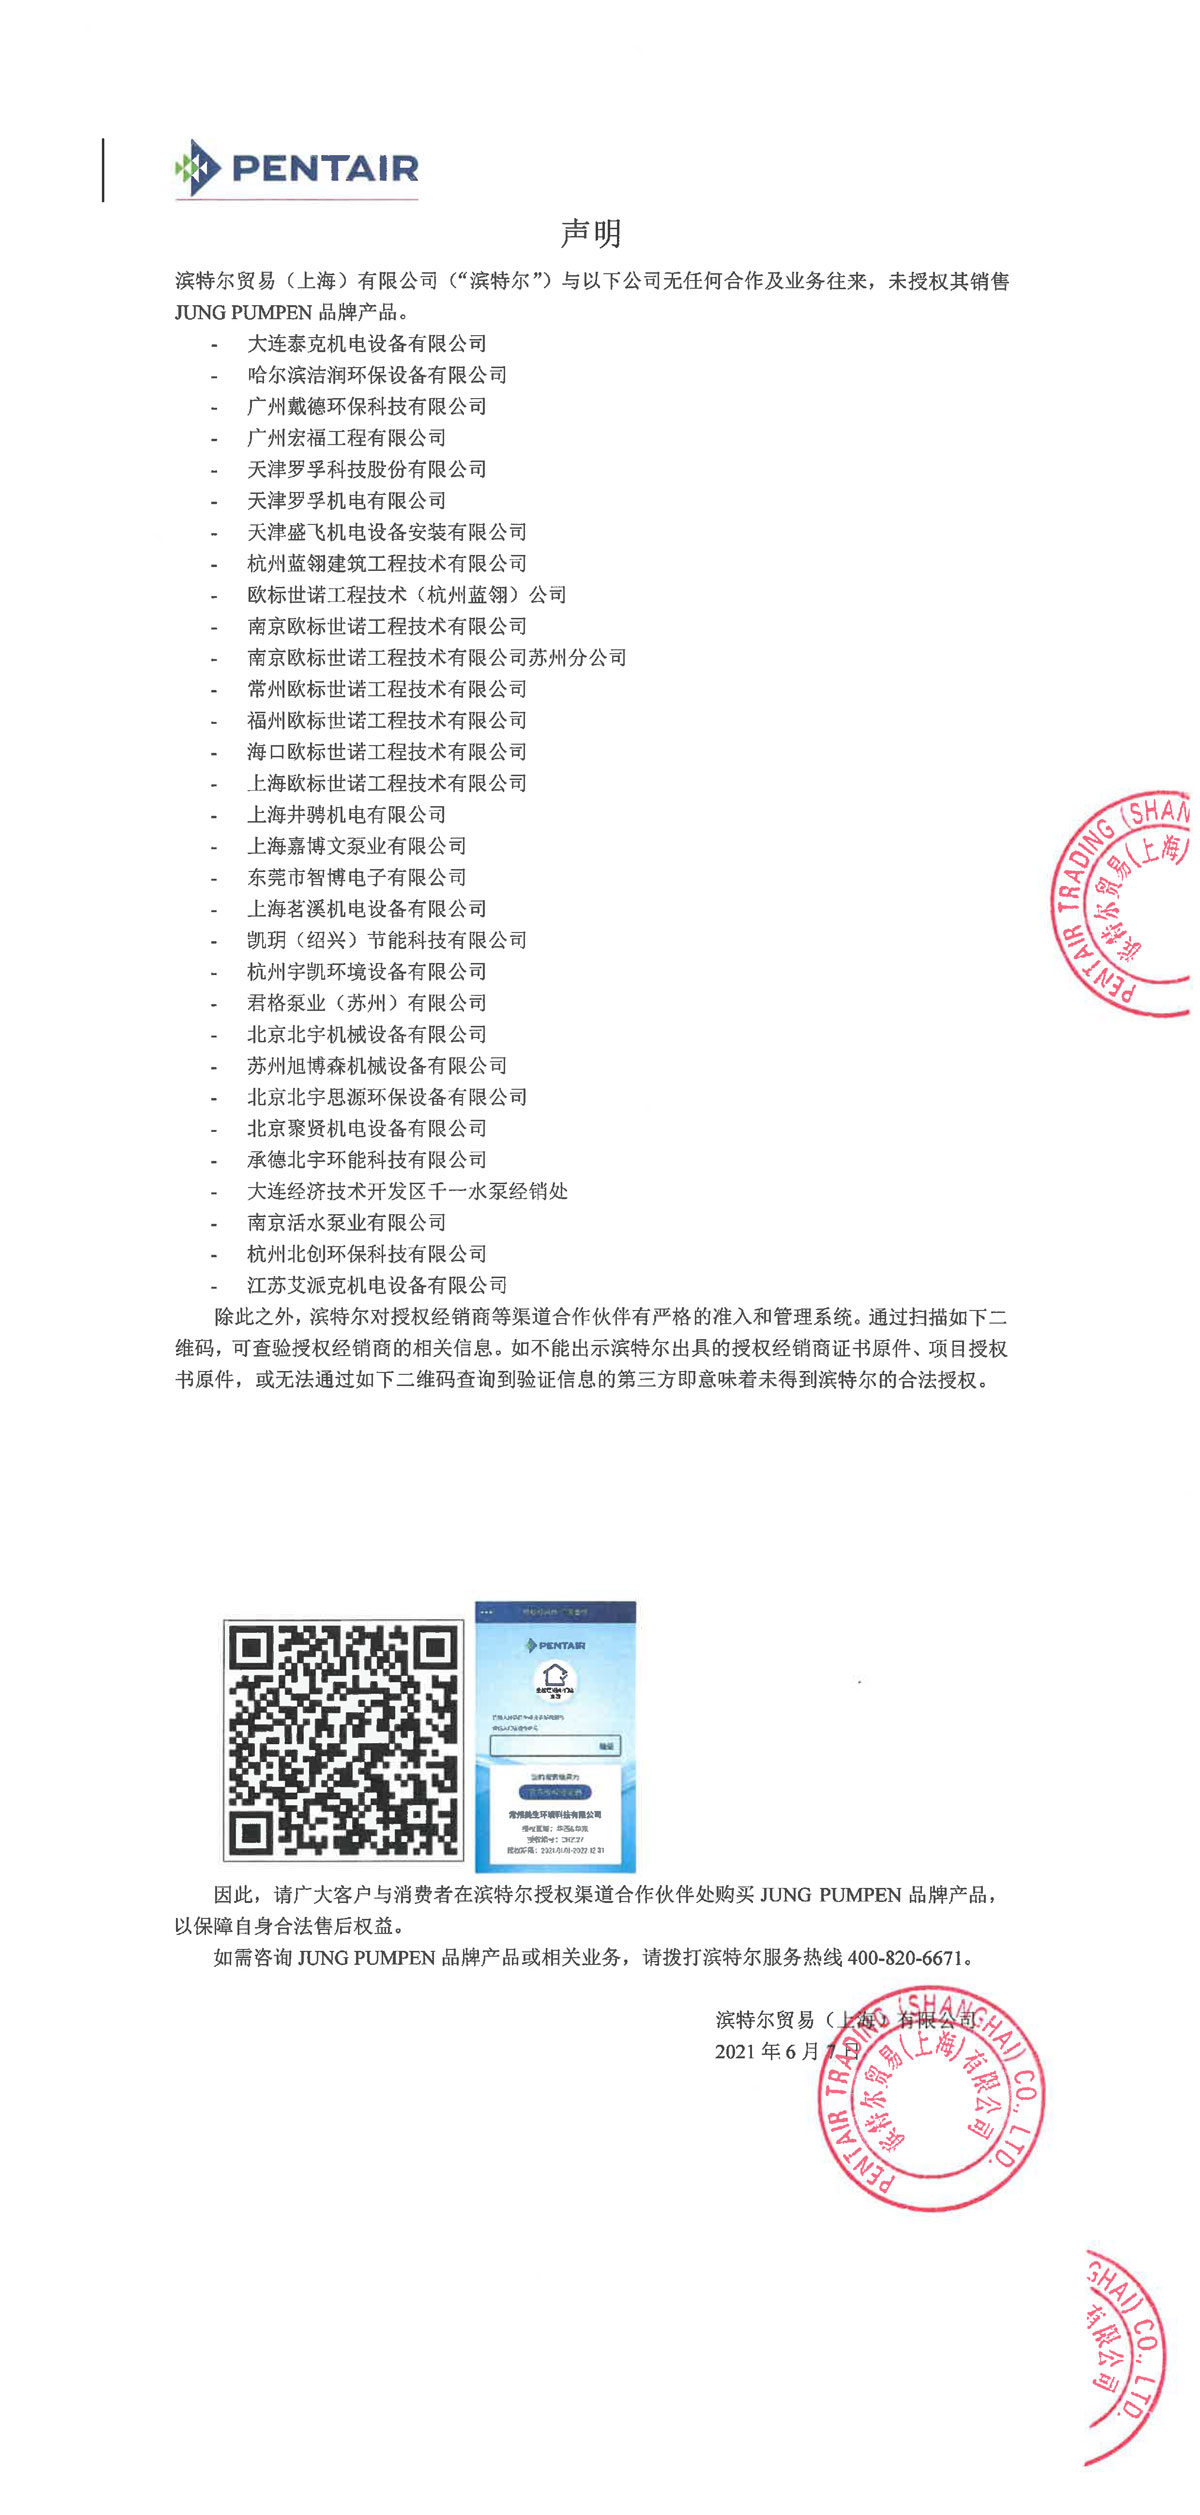 南宫NG28相信品牌的力量网址(中国游)官网